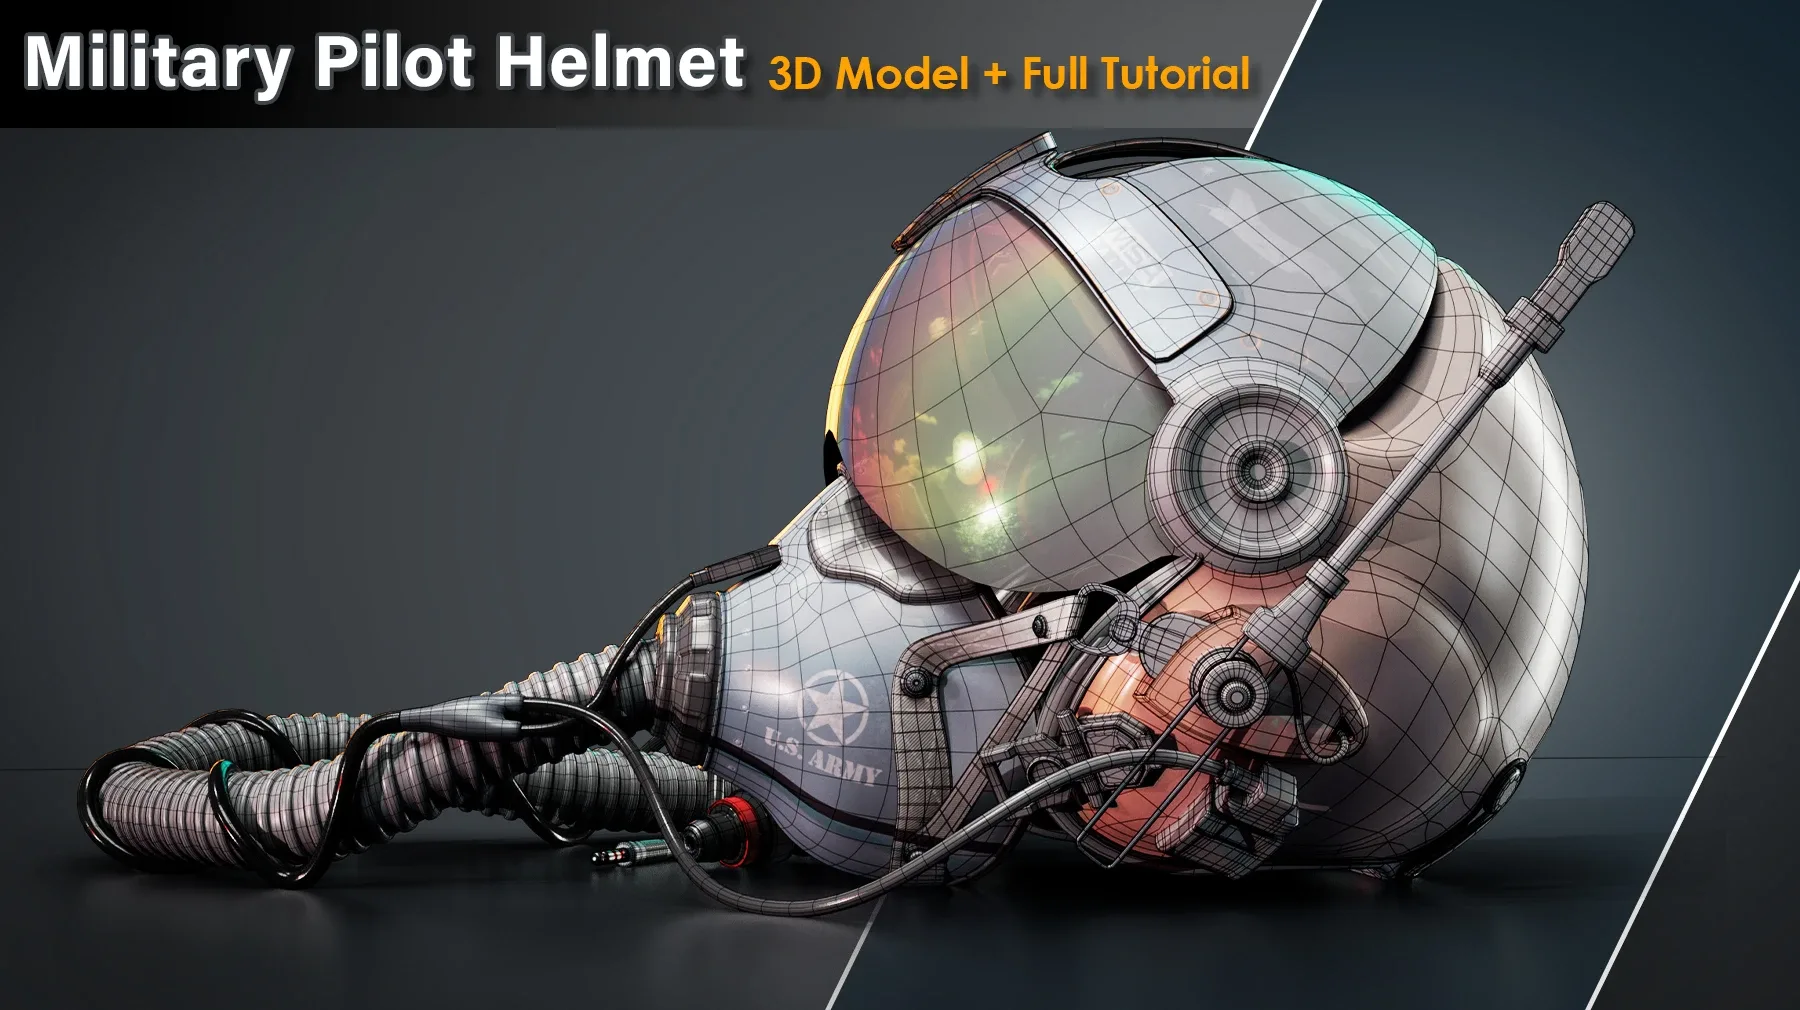 Military Pilot Helmet / Full Tutorial + 3D Model